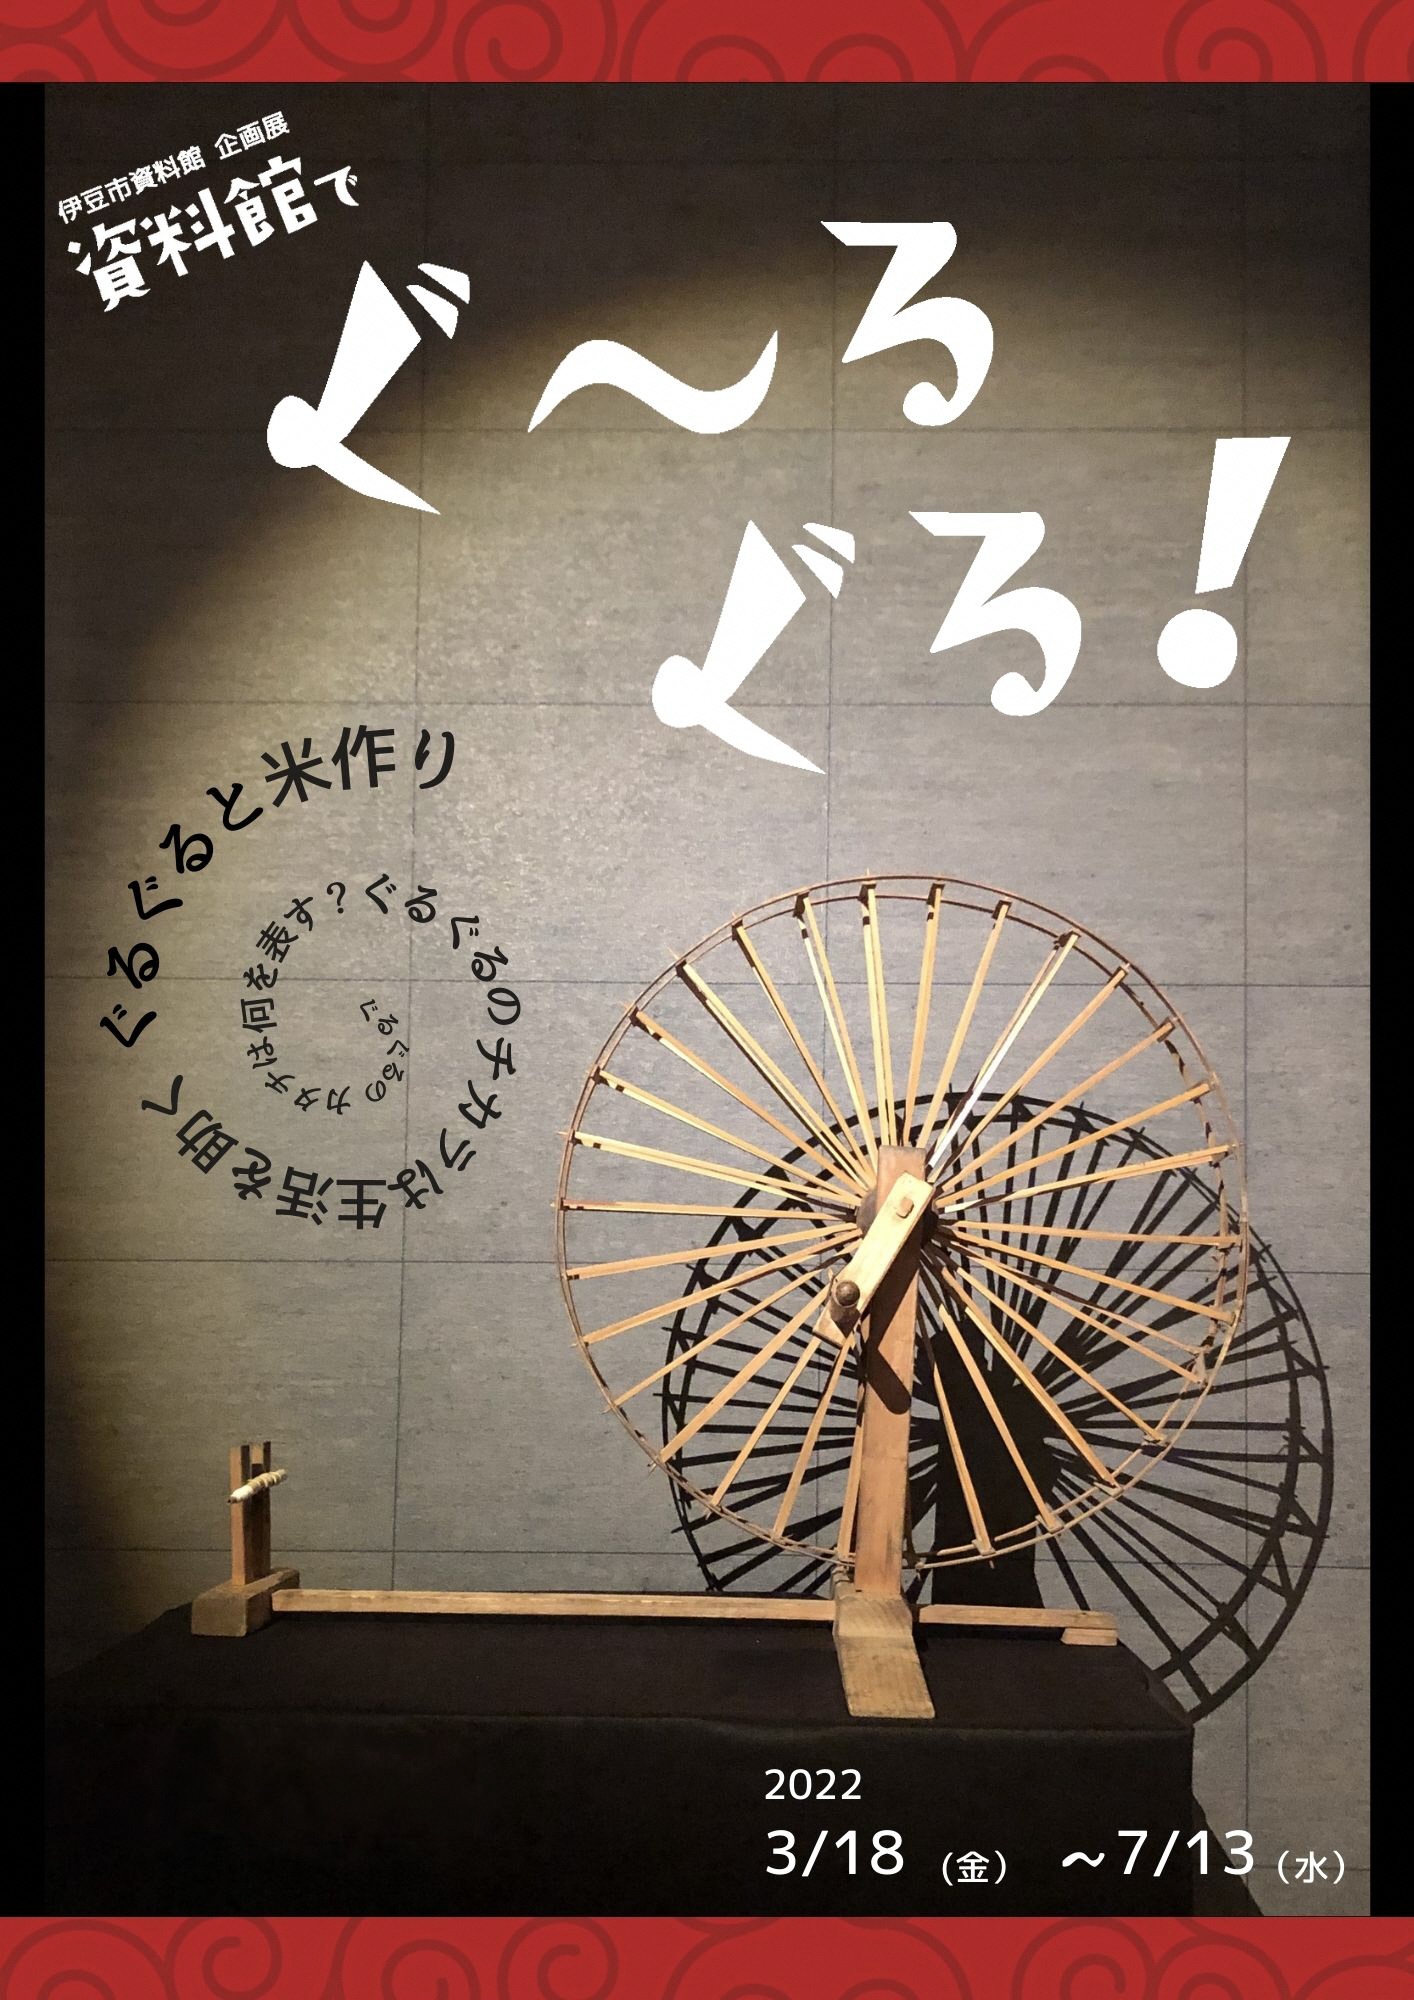 糸車の写真が載っている『資料館でぐ～るぐる！』展のポスター